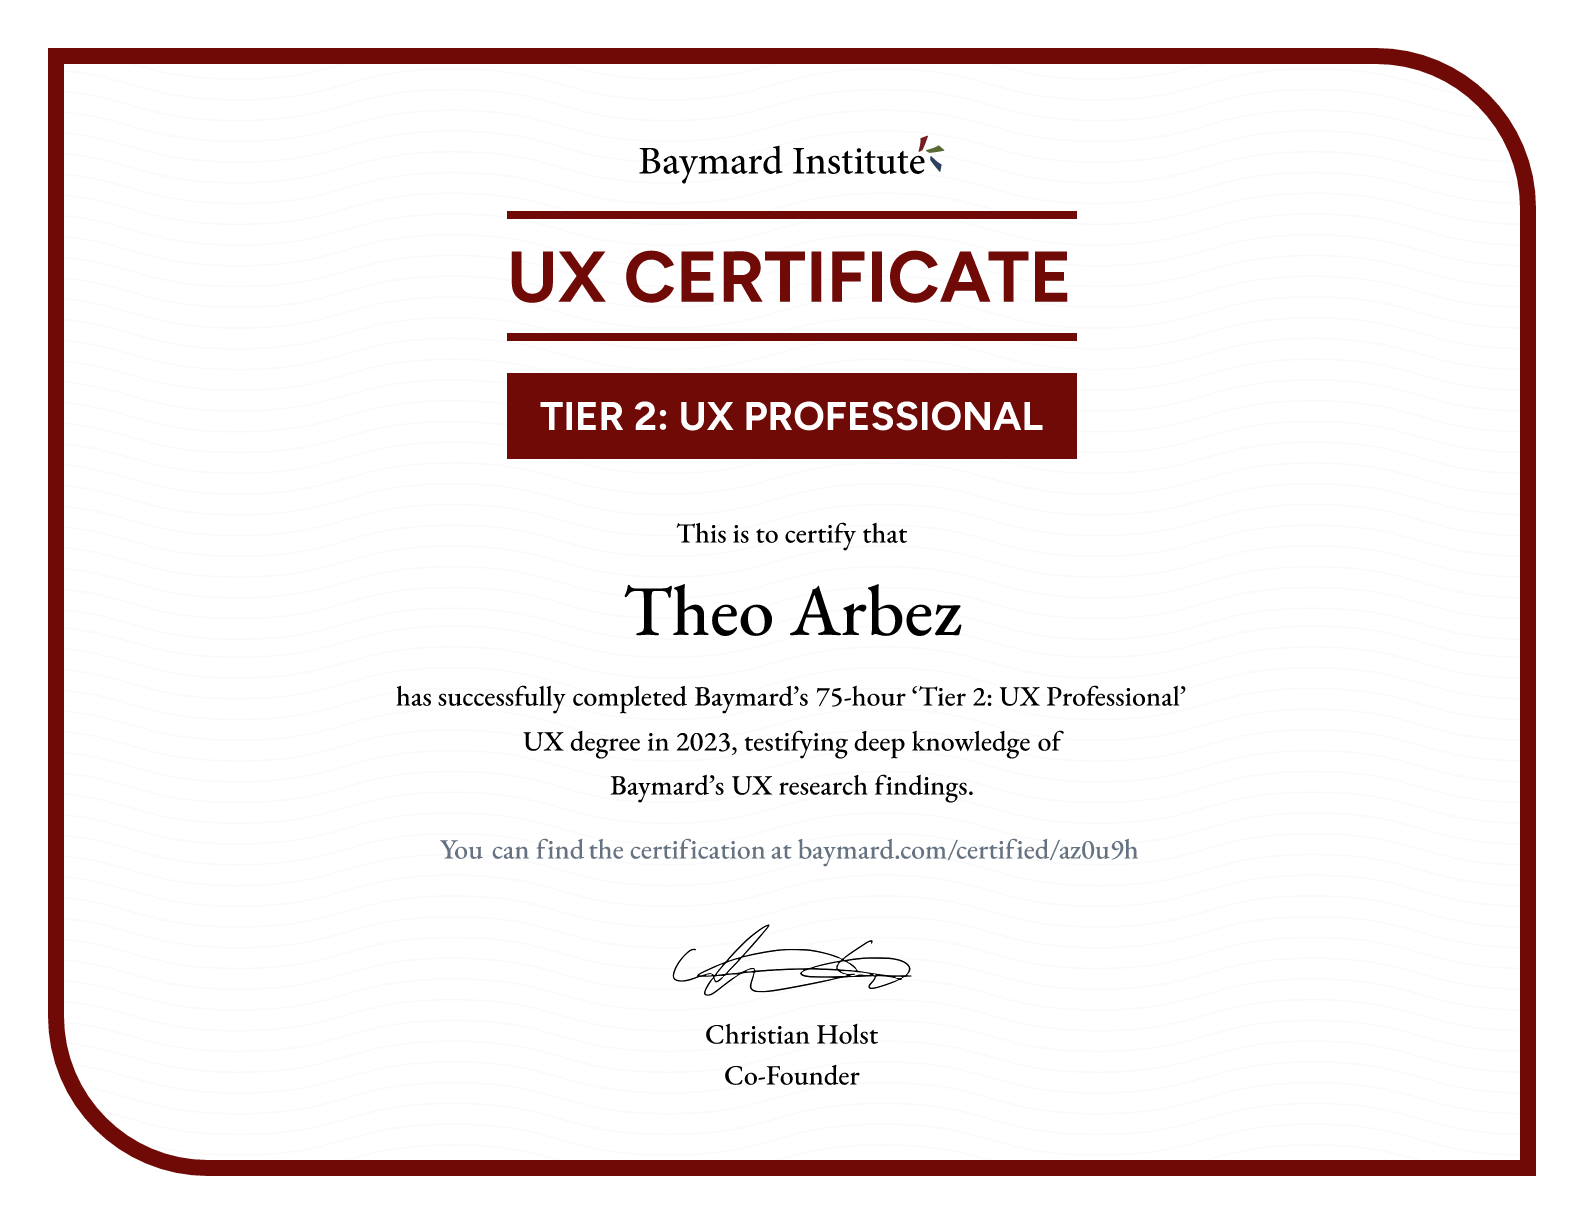 Theo Arbez’s certificate